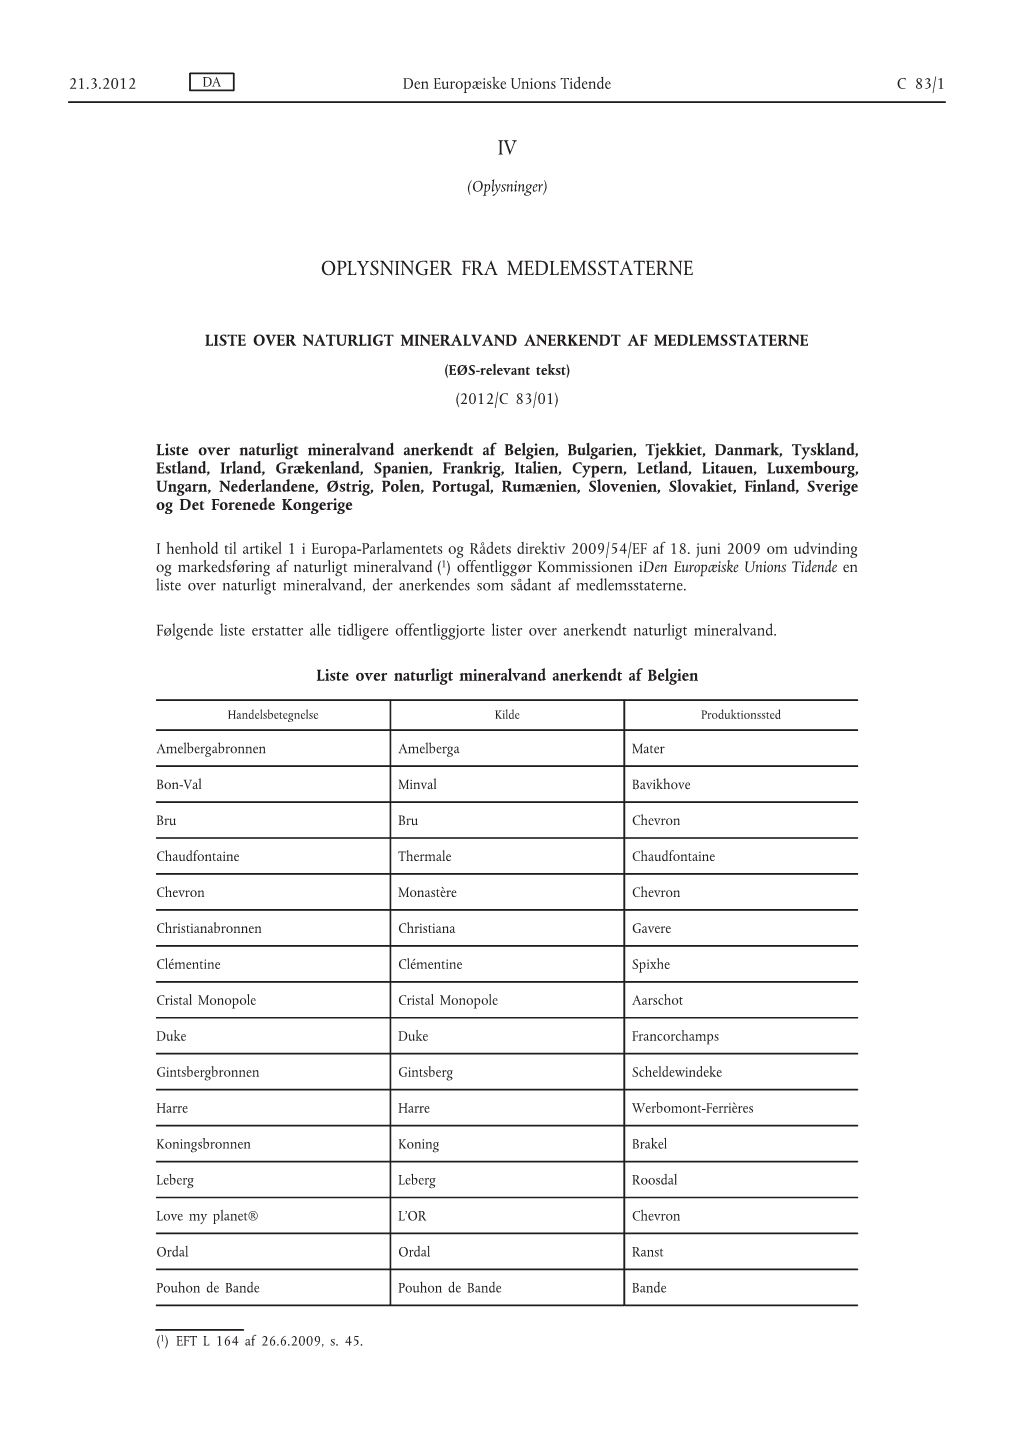 Liste Over Naturligt Mineralvand Anerkendt Af Medlemsstaterneeøs